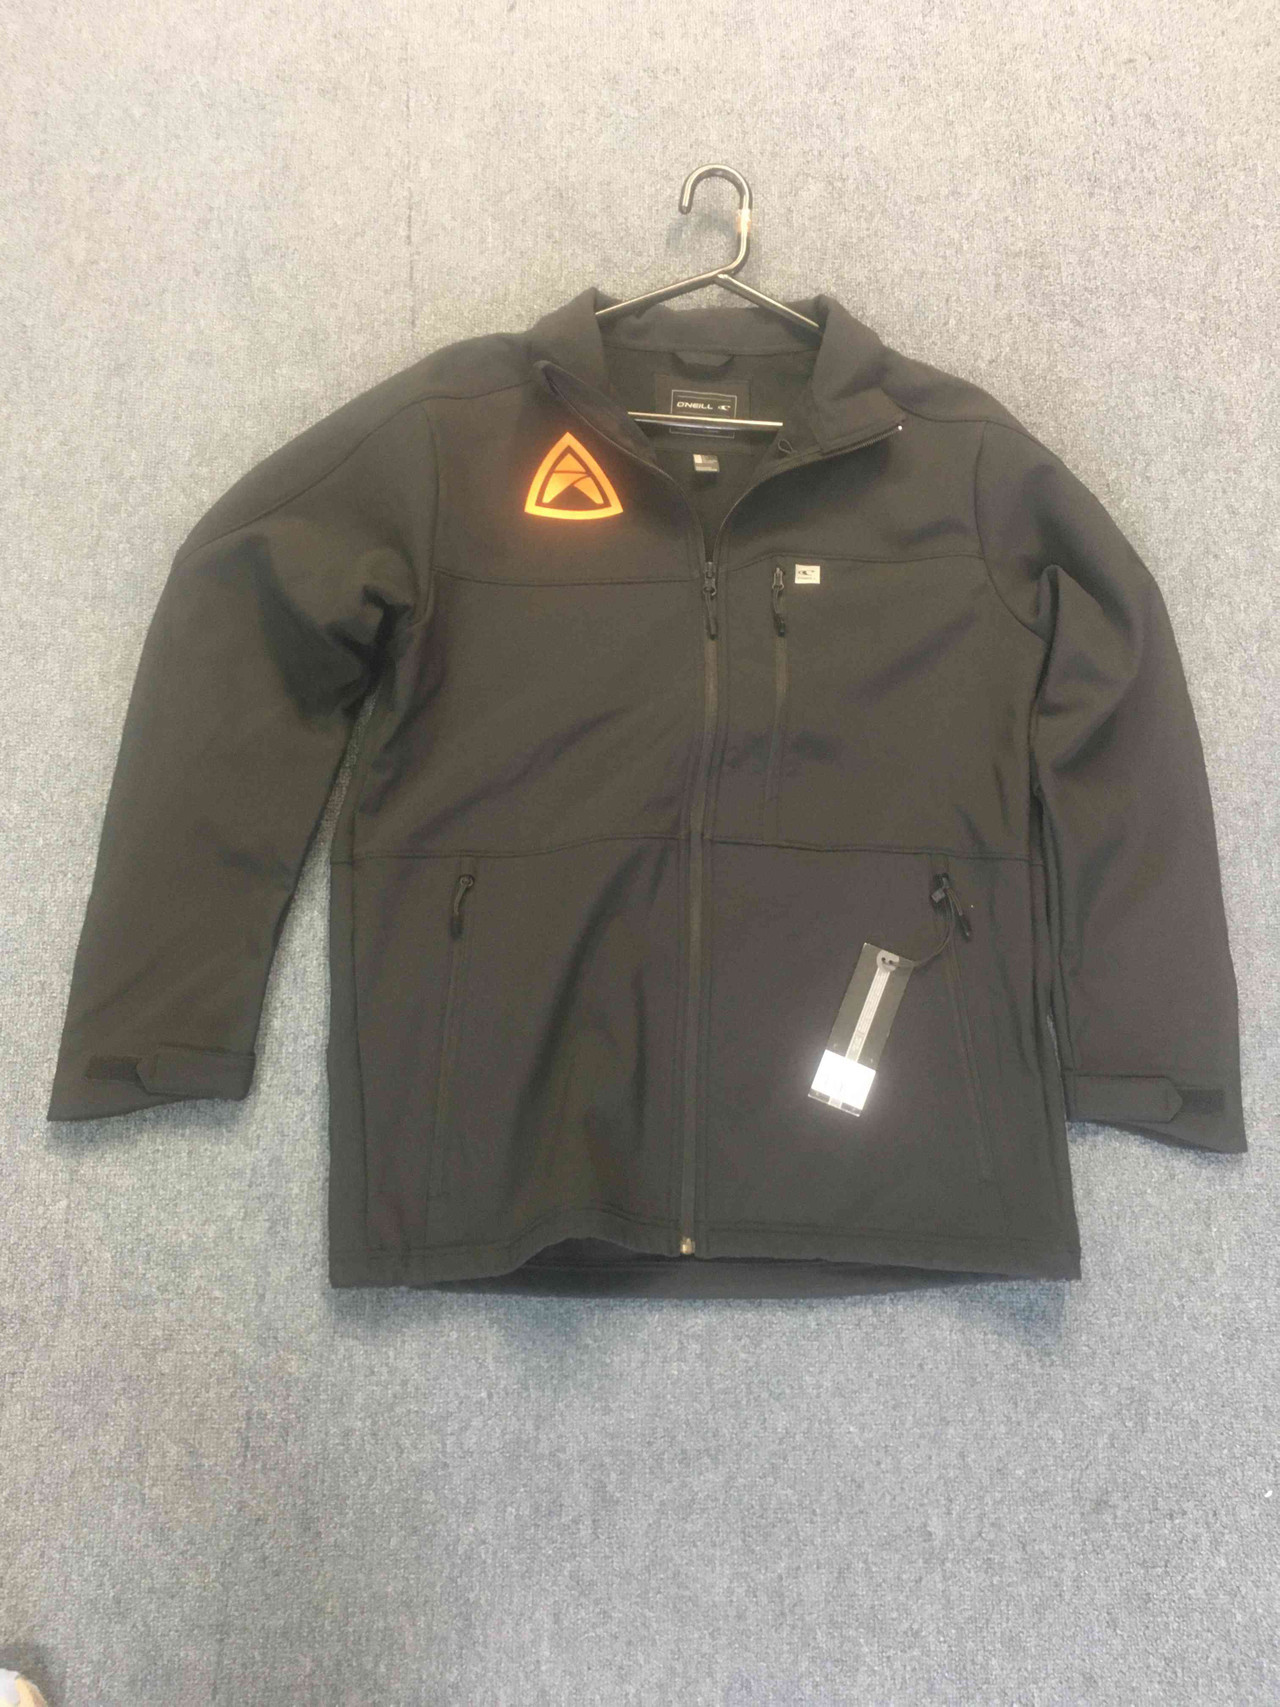 NZBS Printed Softshell Jacket - NZ Boardstore